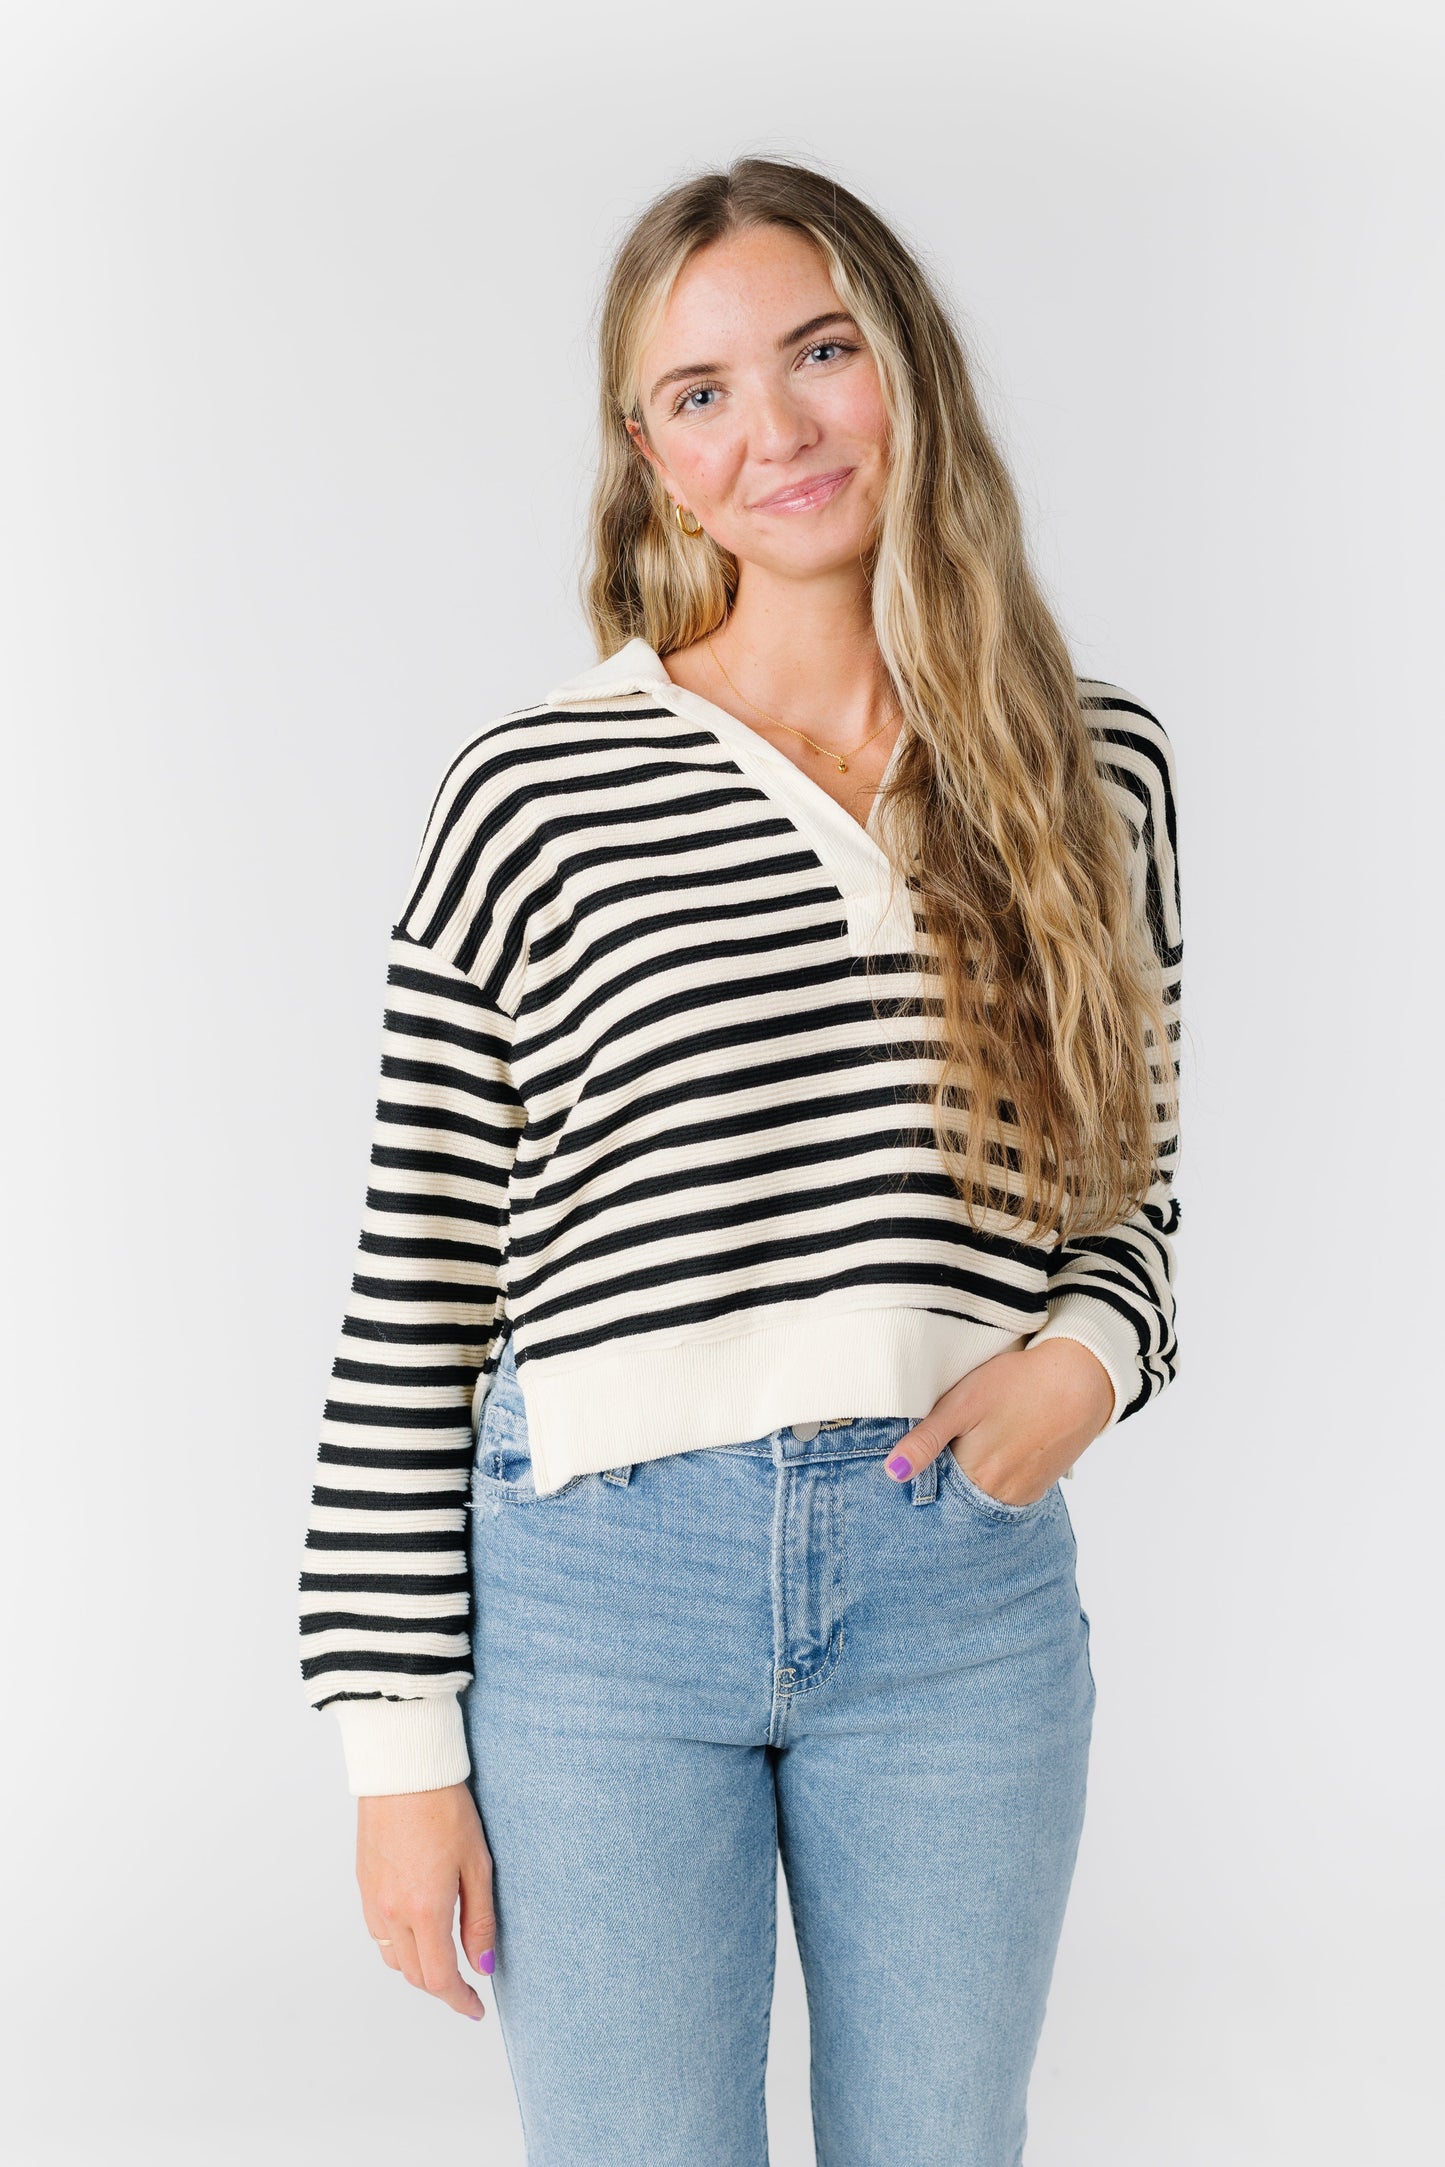 Stripe Collared Sweater WOMEN'S SWEATERS Blu Pepper Black L 